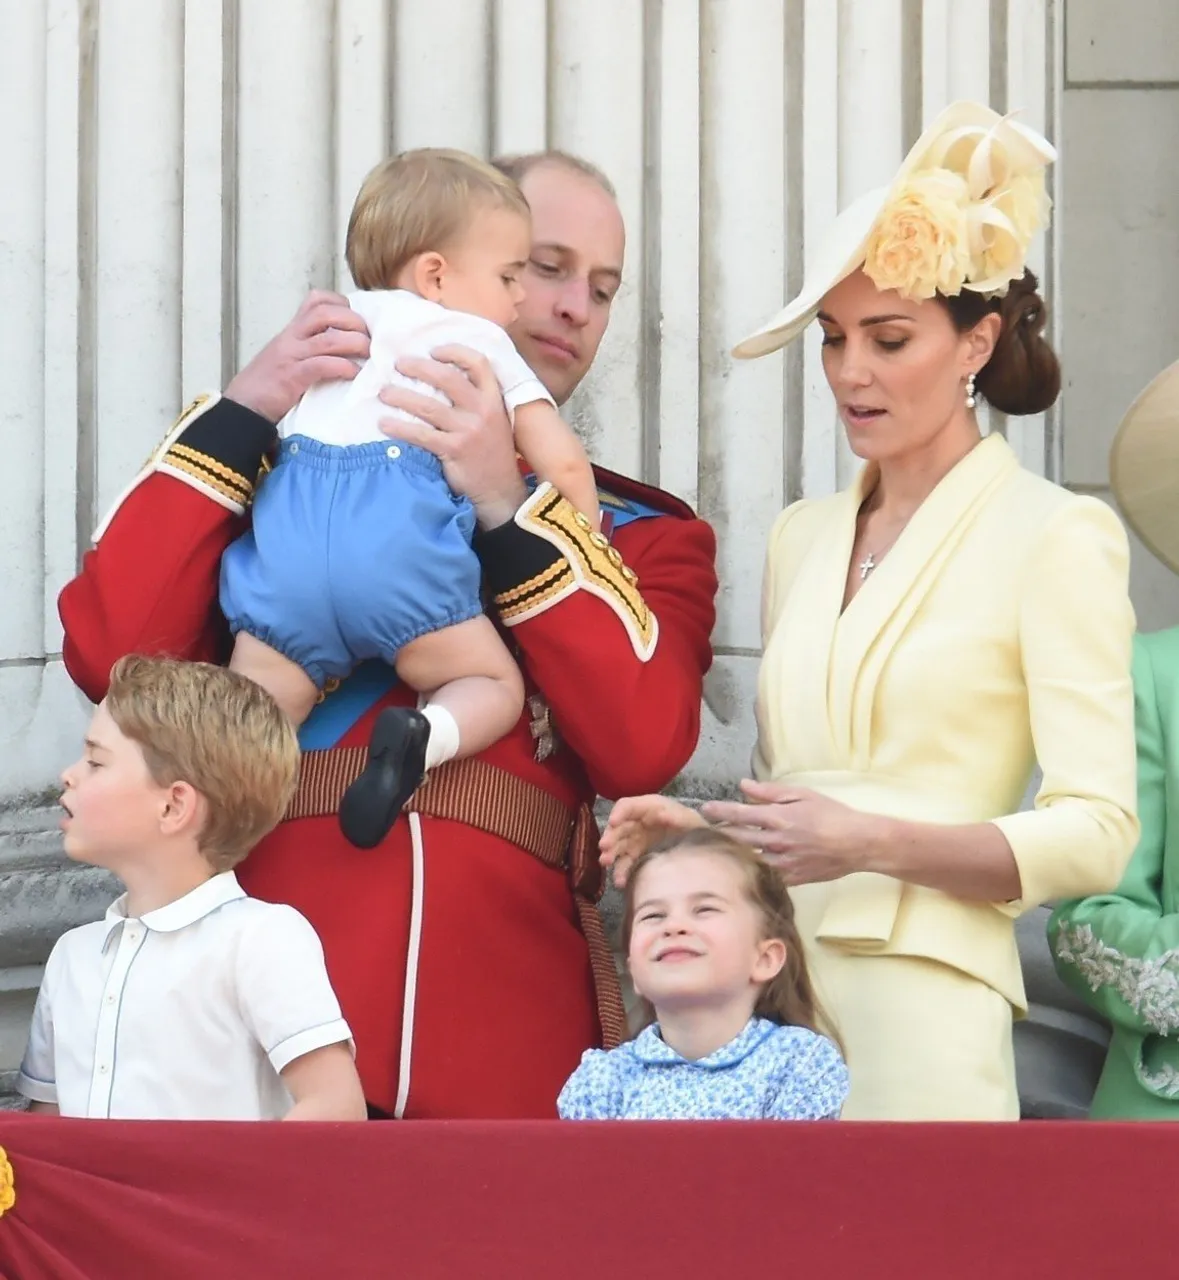 Kraljevska obitelj, princ William i Kate Middleton s djecom